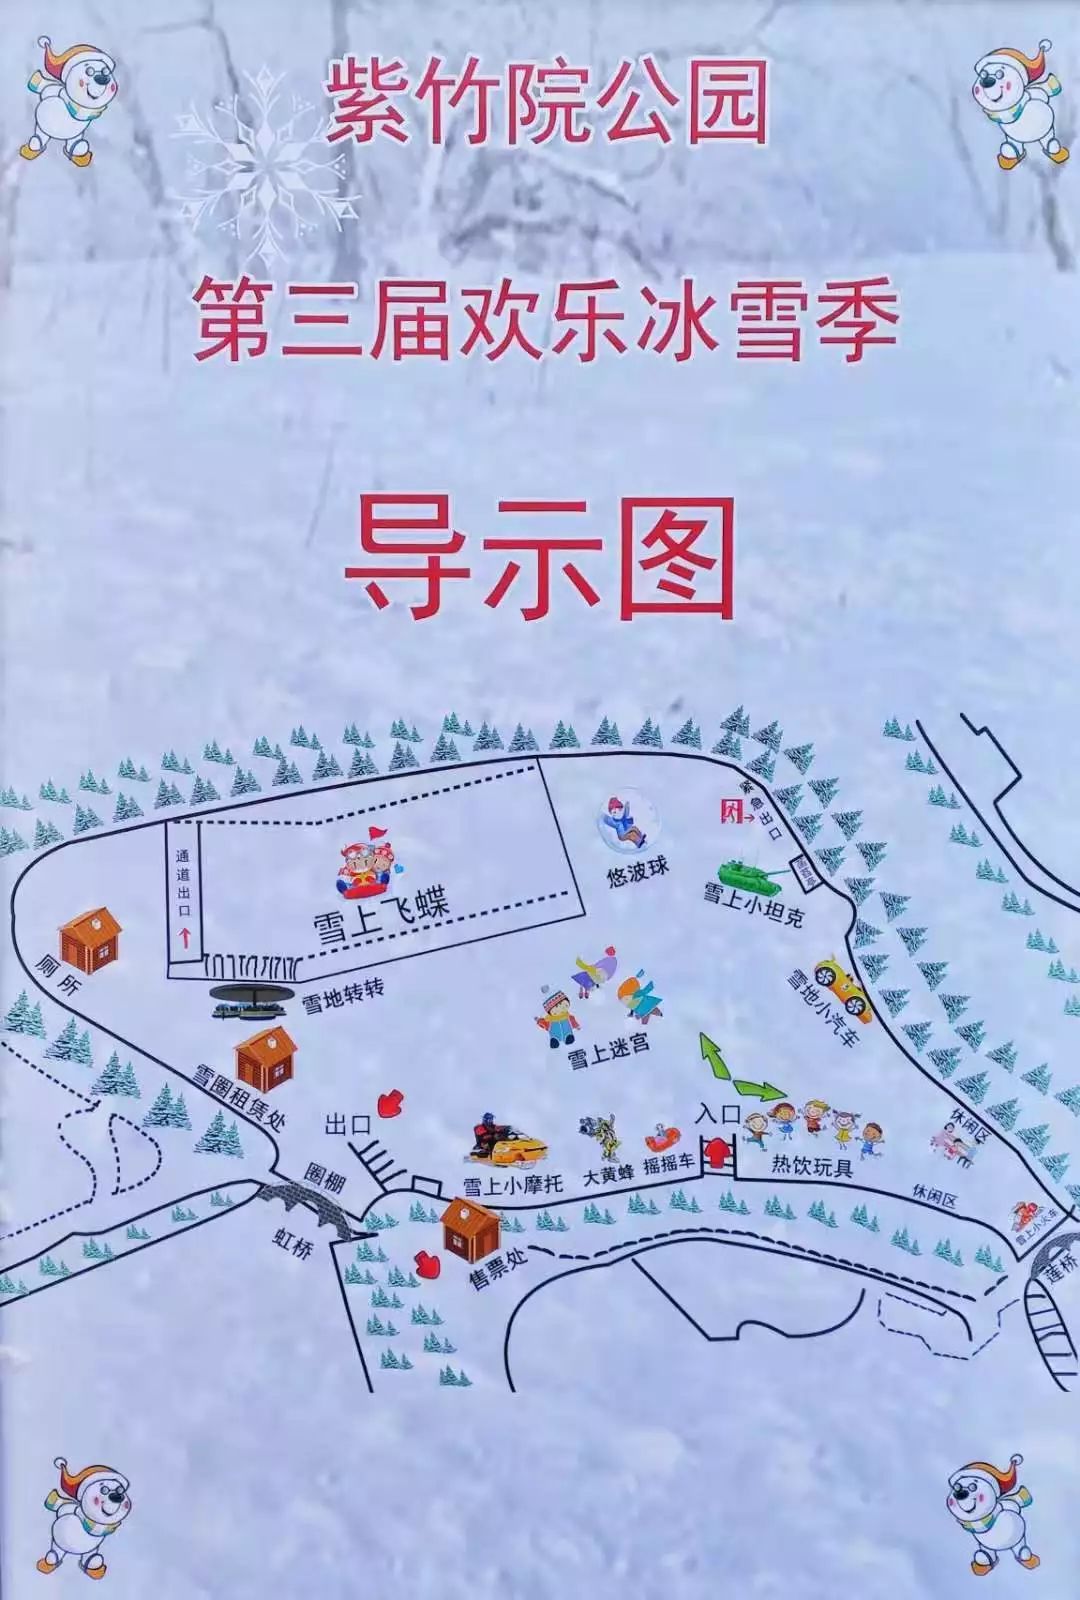 紫竹院公园地图图片